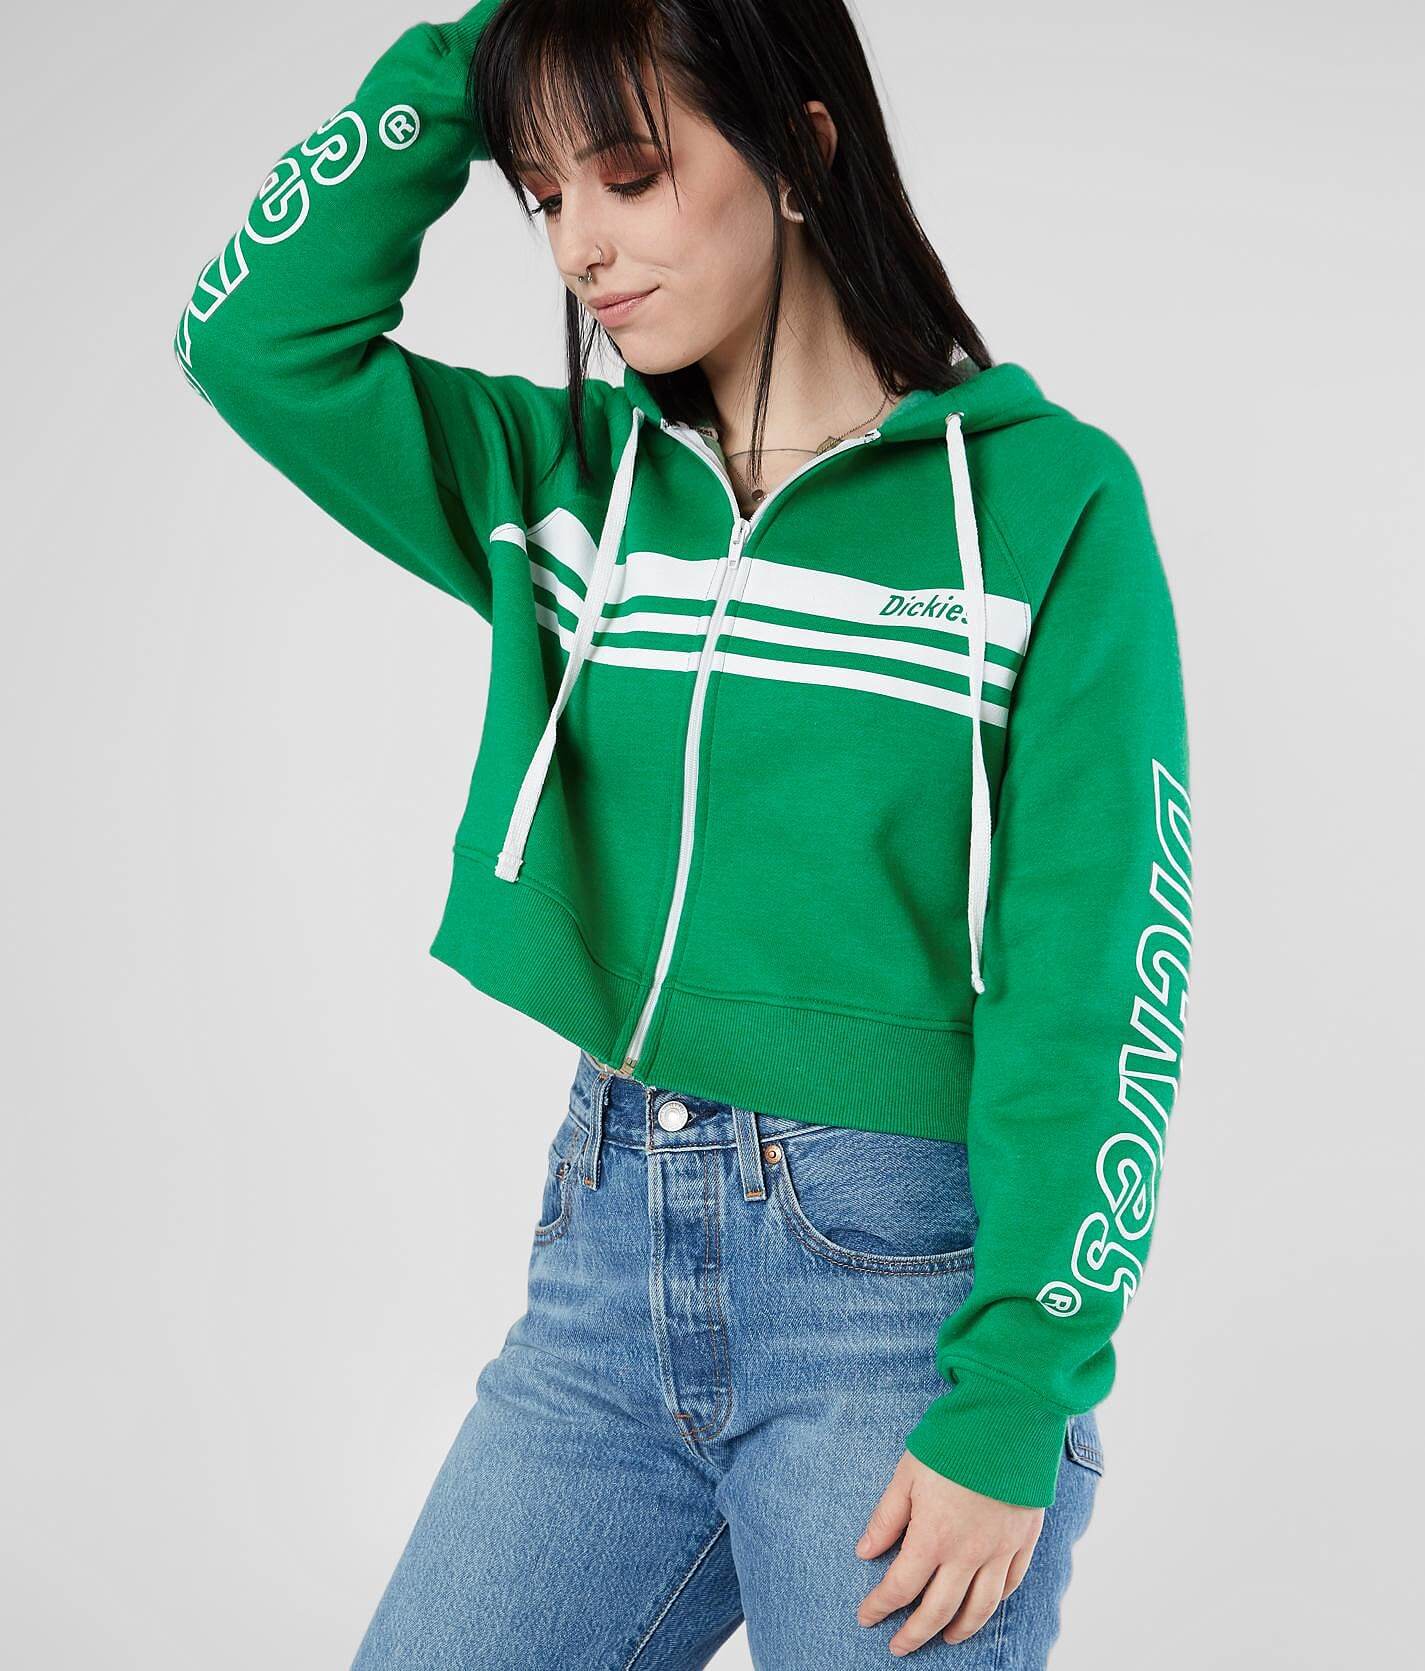 kelly green sweatshirt womens